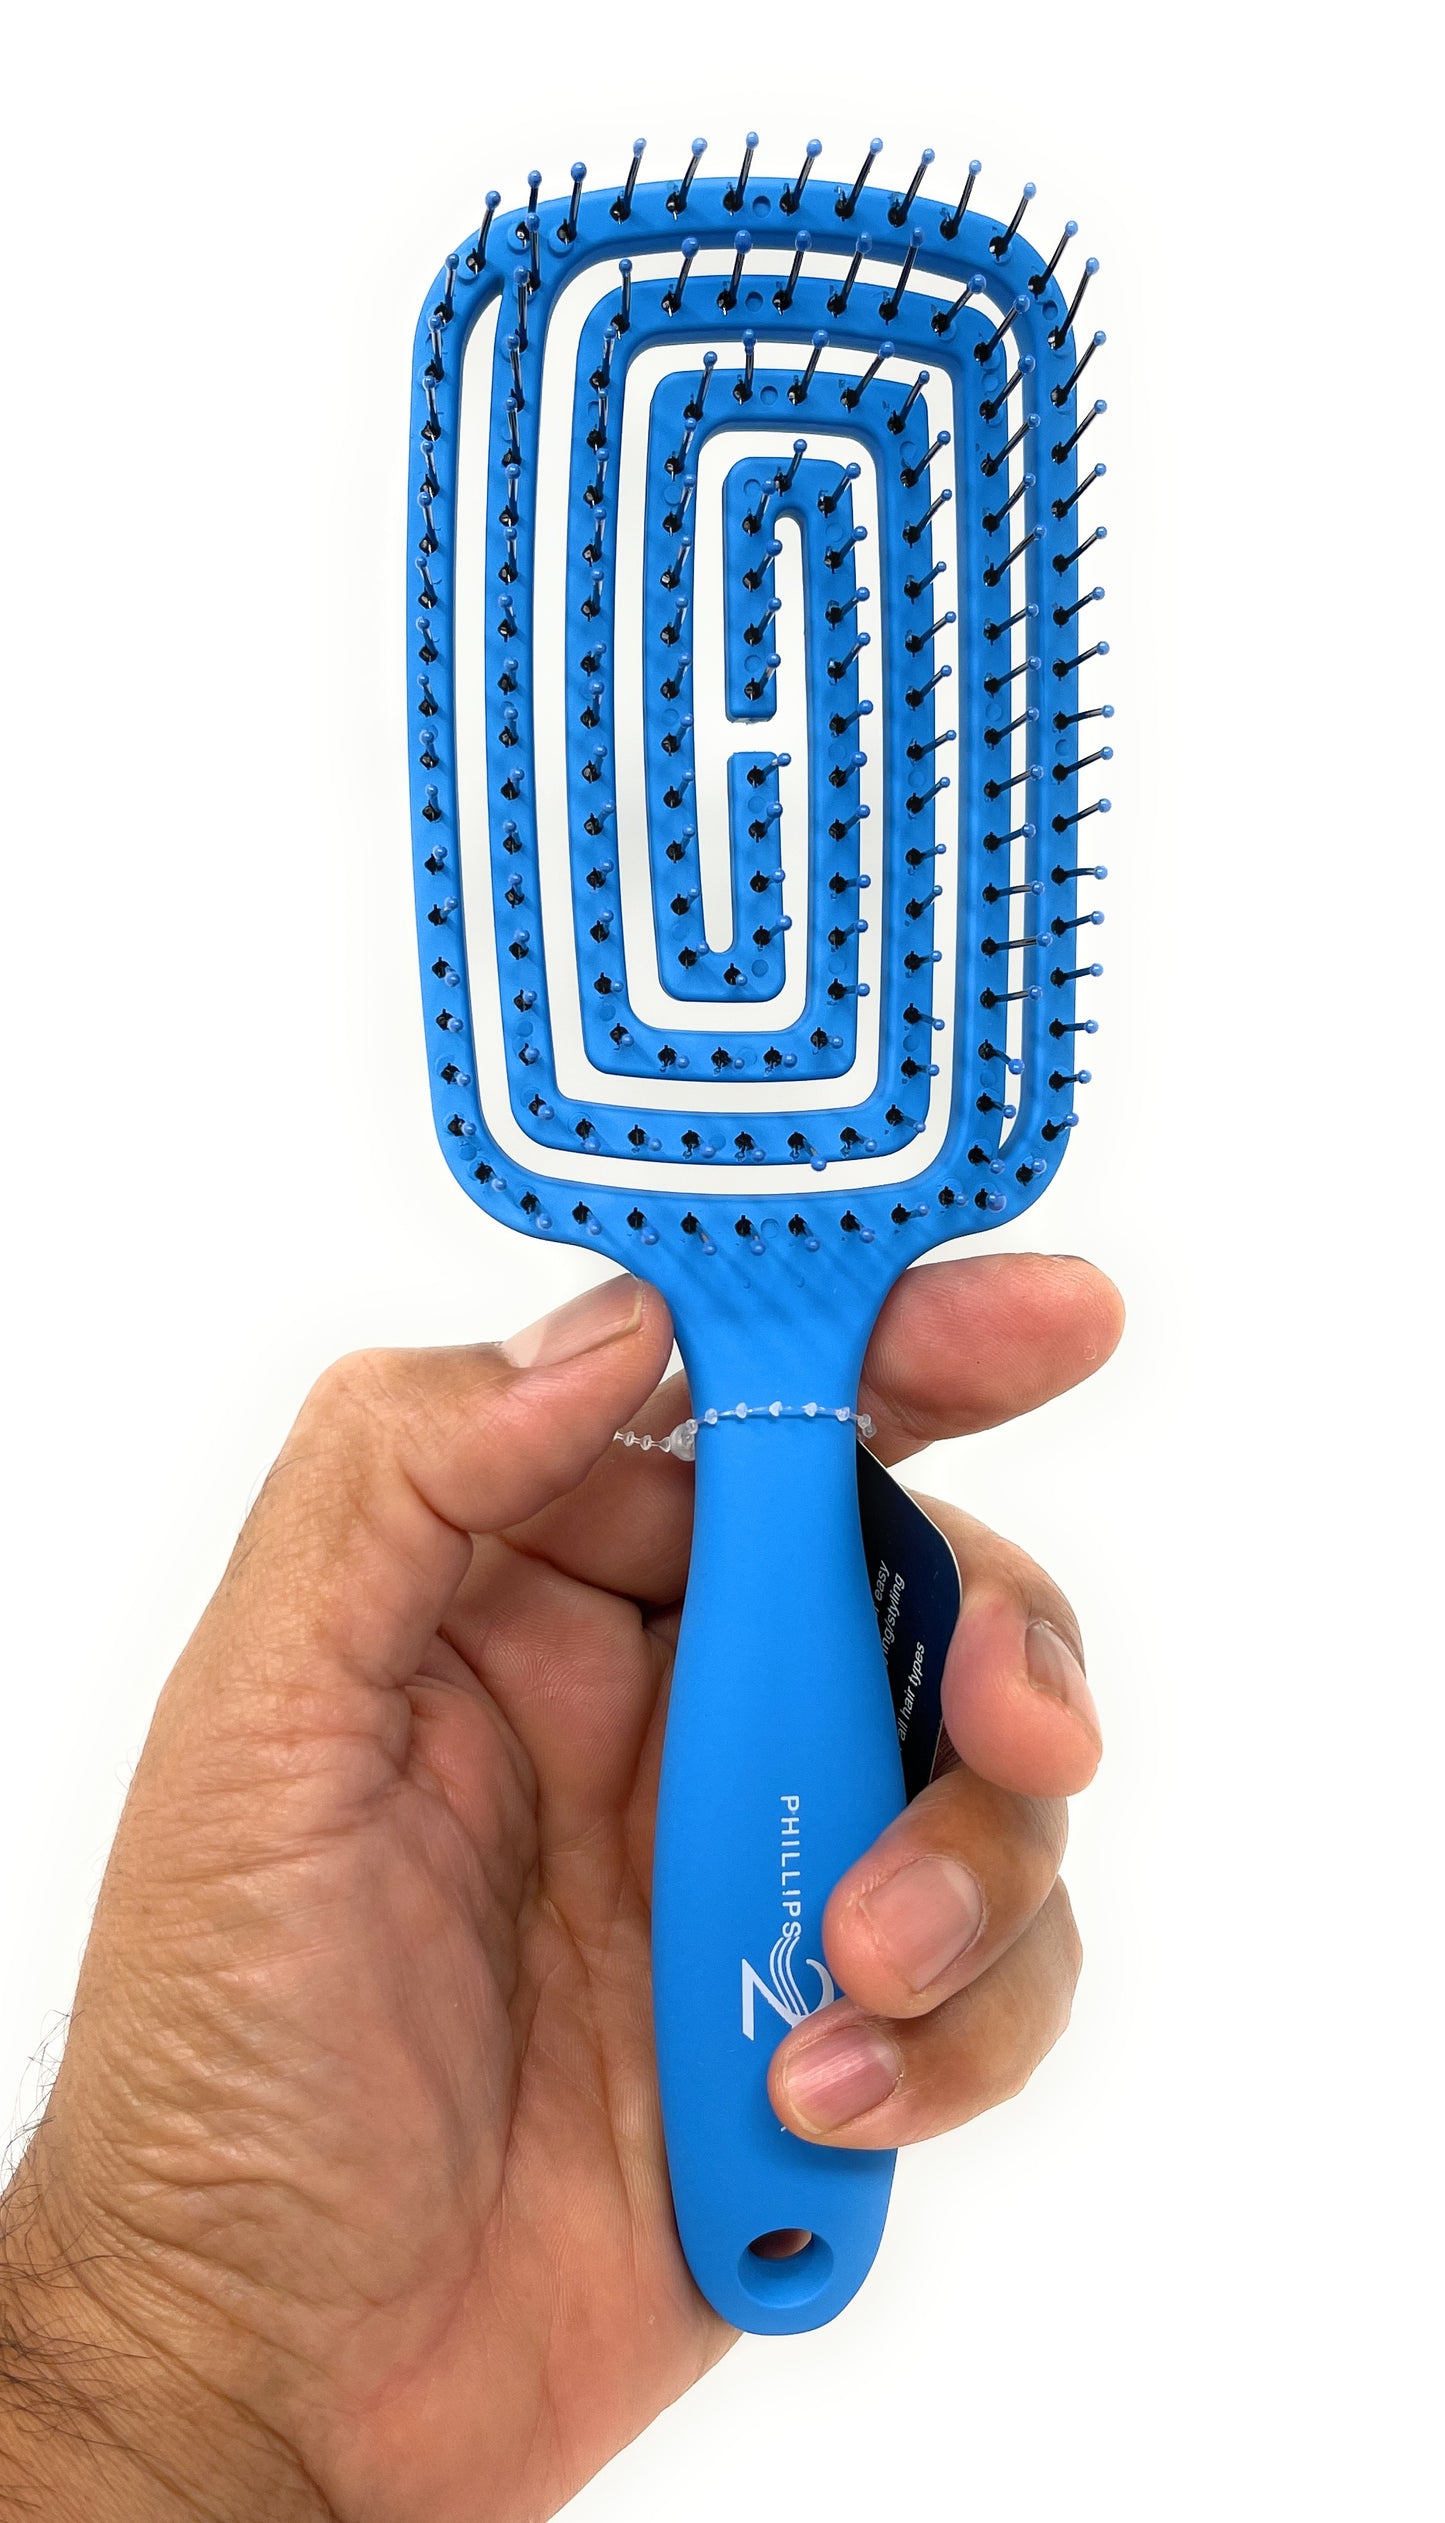 Phillips Brush Flexx 2 Vented Flexible Hair Brush For Hair Drying Detangling Hair Styling Blue